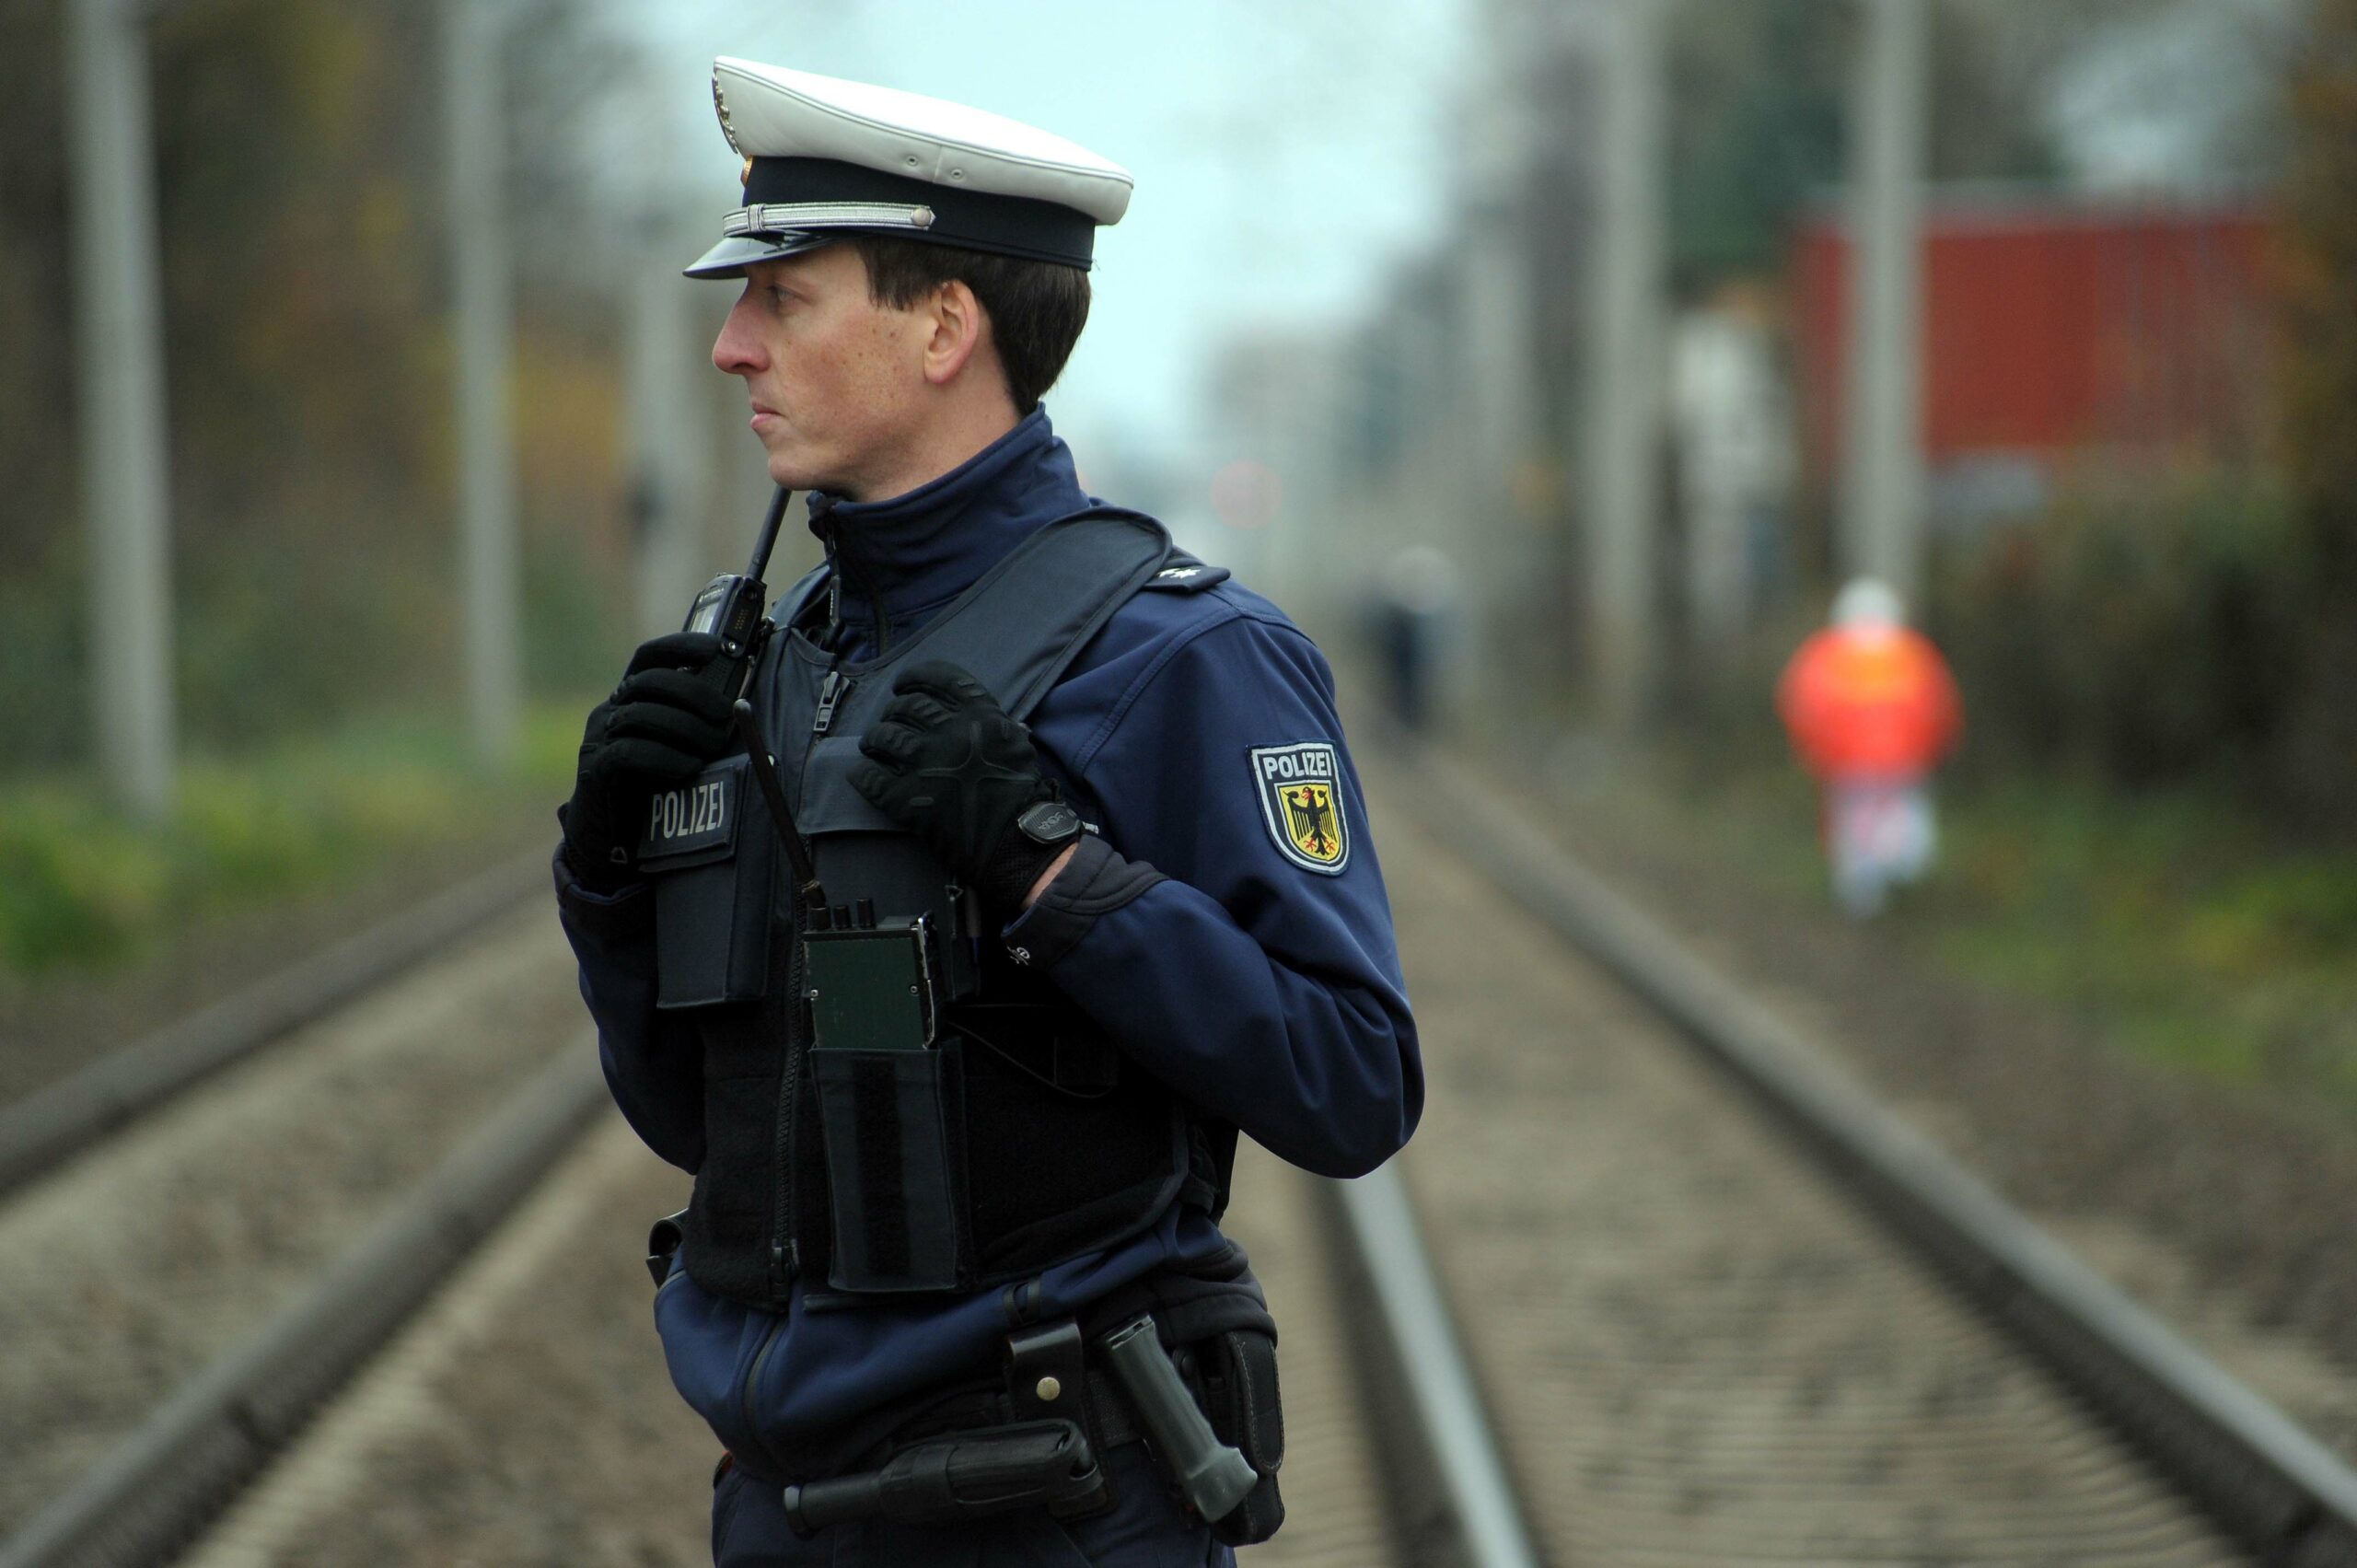 Bahnhof Bahrenfeld wegen aufgefundenen, verdächtigen Gegenstand gesperrt